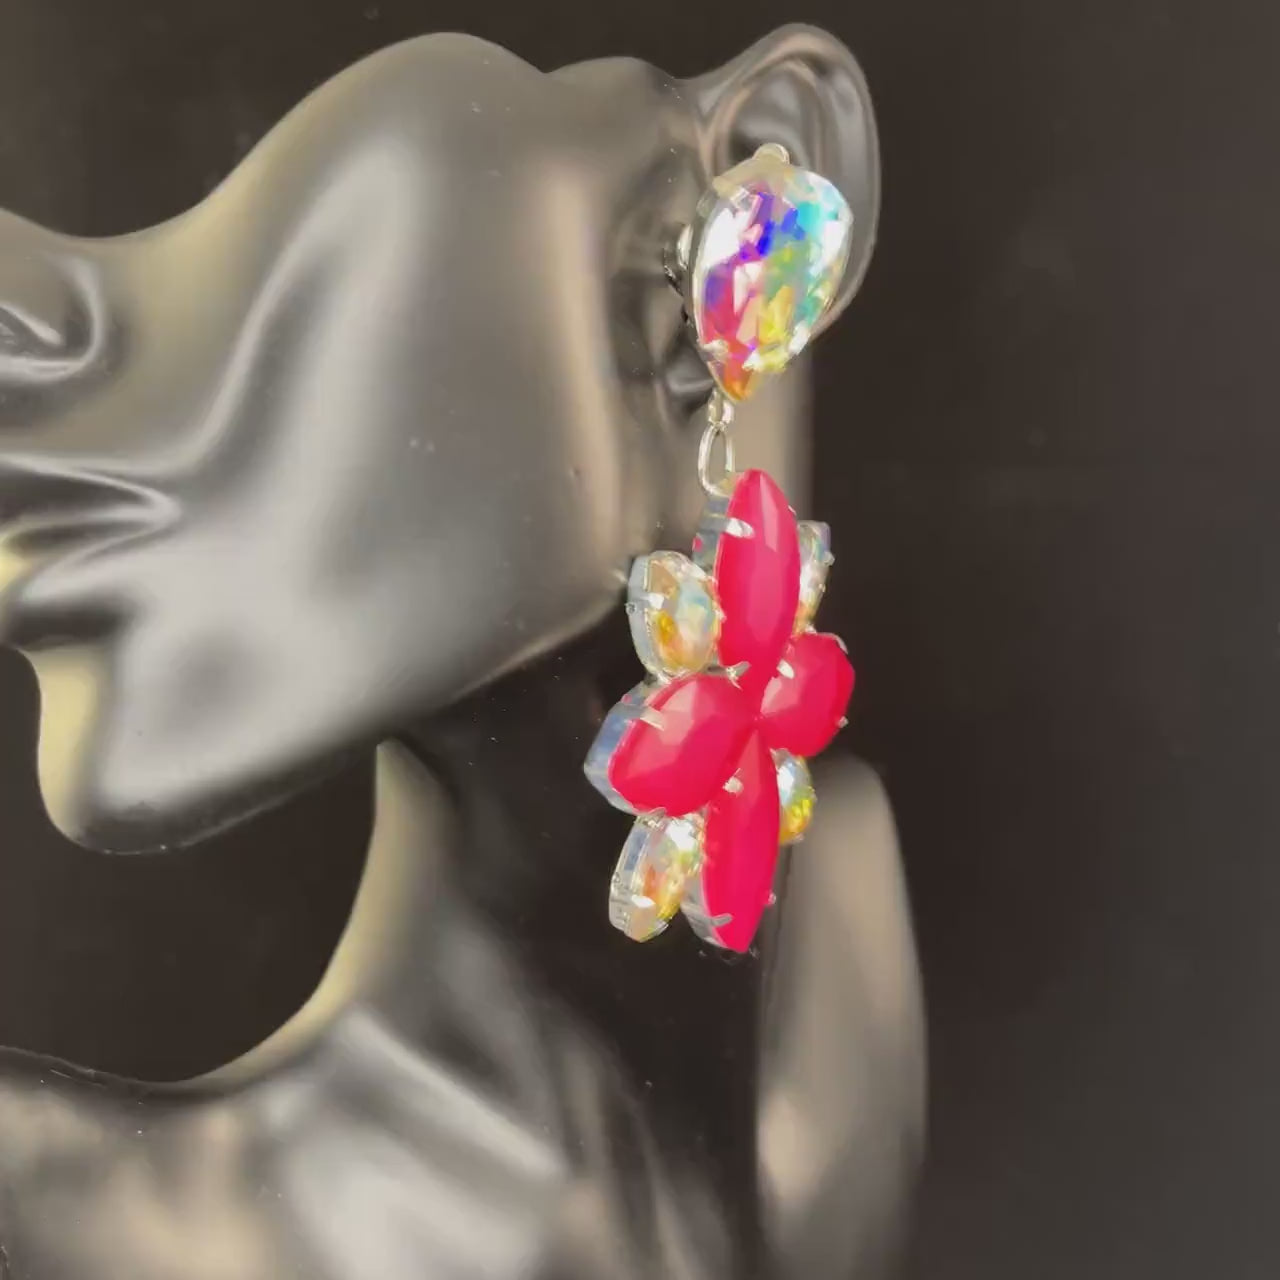 Neon Earrings / Clip On or Pierced / Statement Earrings / Crystal Jewelry / Dress Earrings / Drag Queen / phantom of the opera